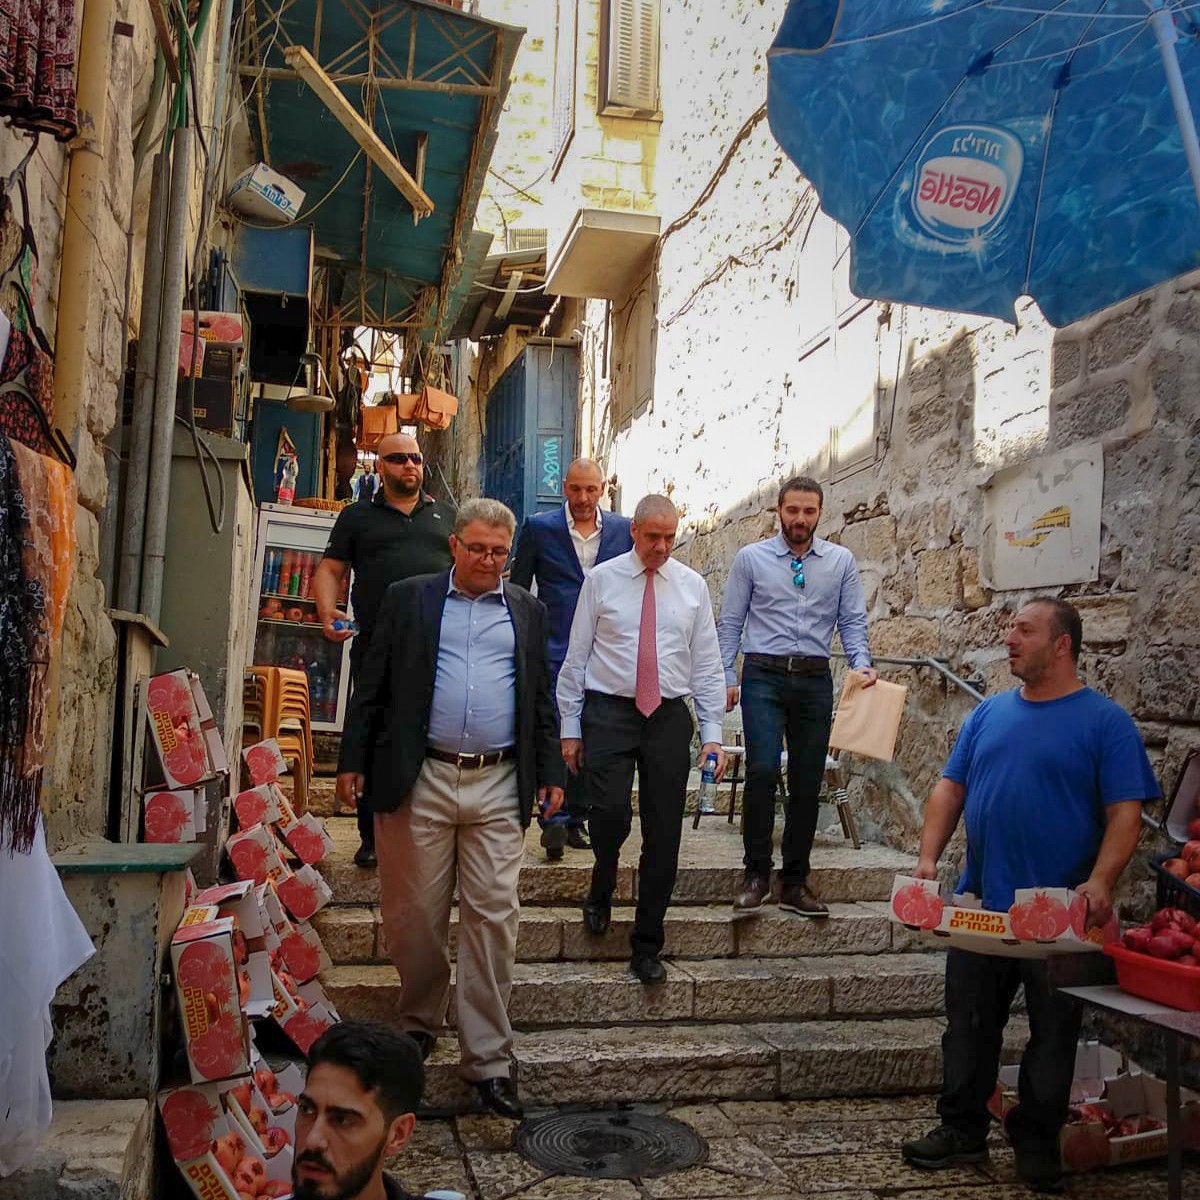 رئيس جامعة القدس أبو كشك وممثل الاتحاد الأوروبي يتفقدا بركة البطرك بالبلدة القديمة في مدينة القدس.jpg